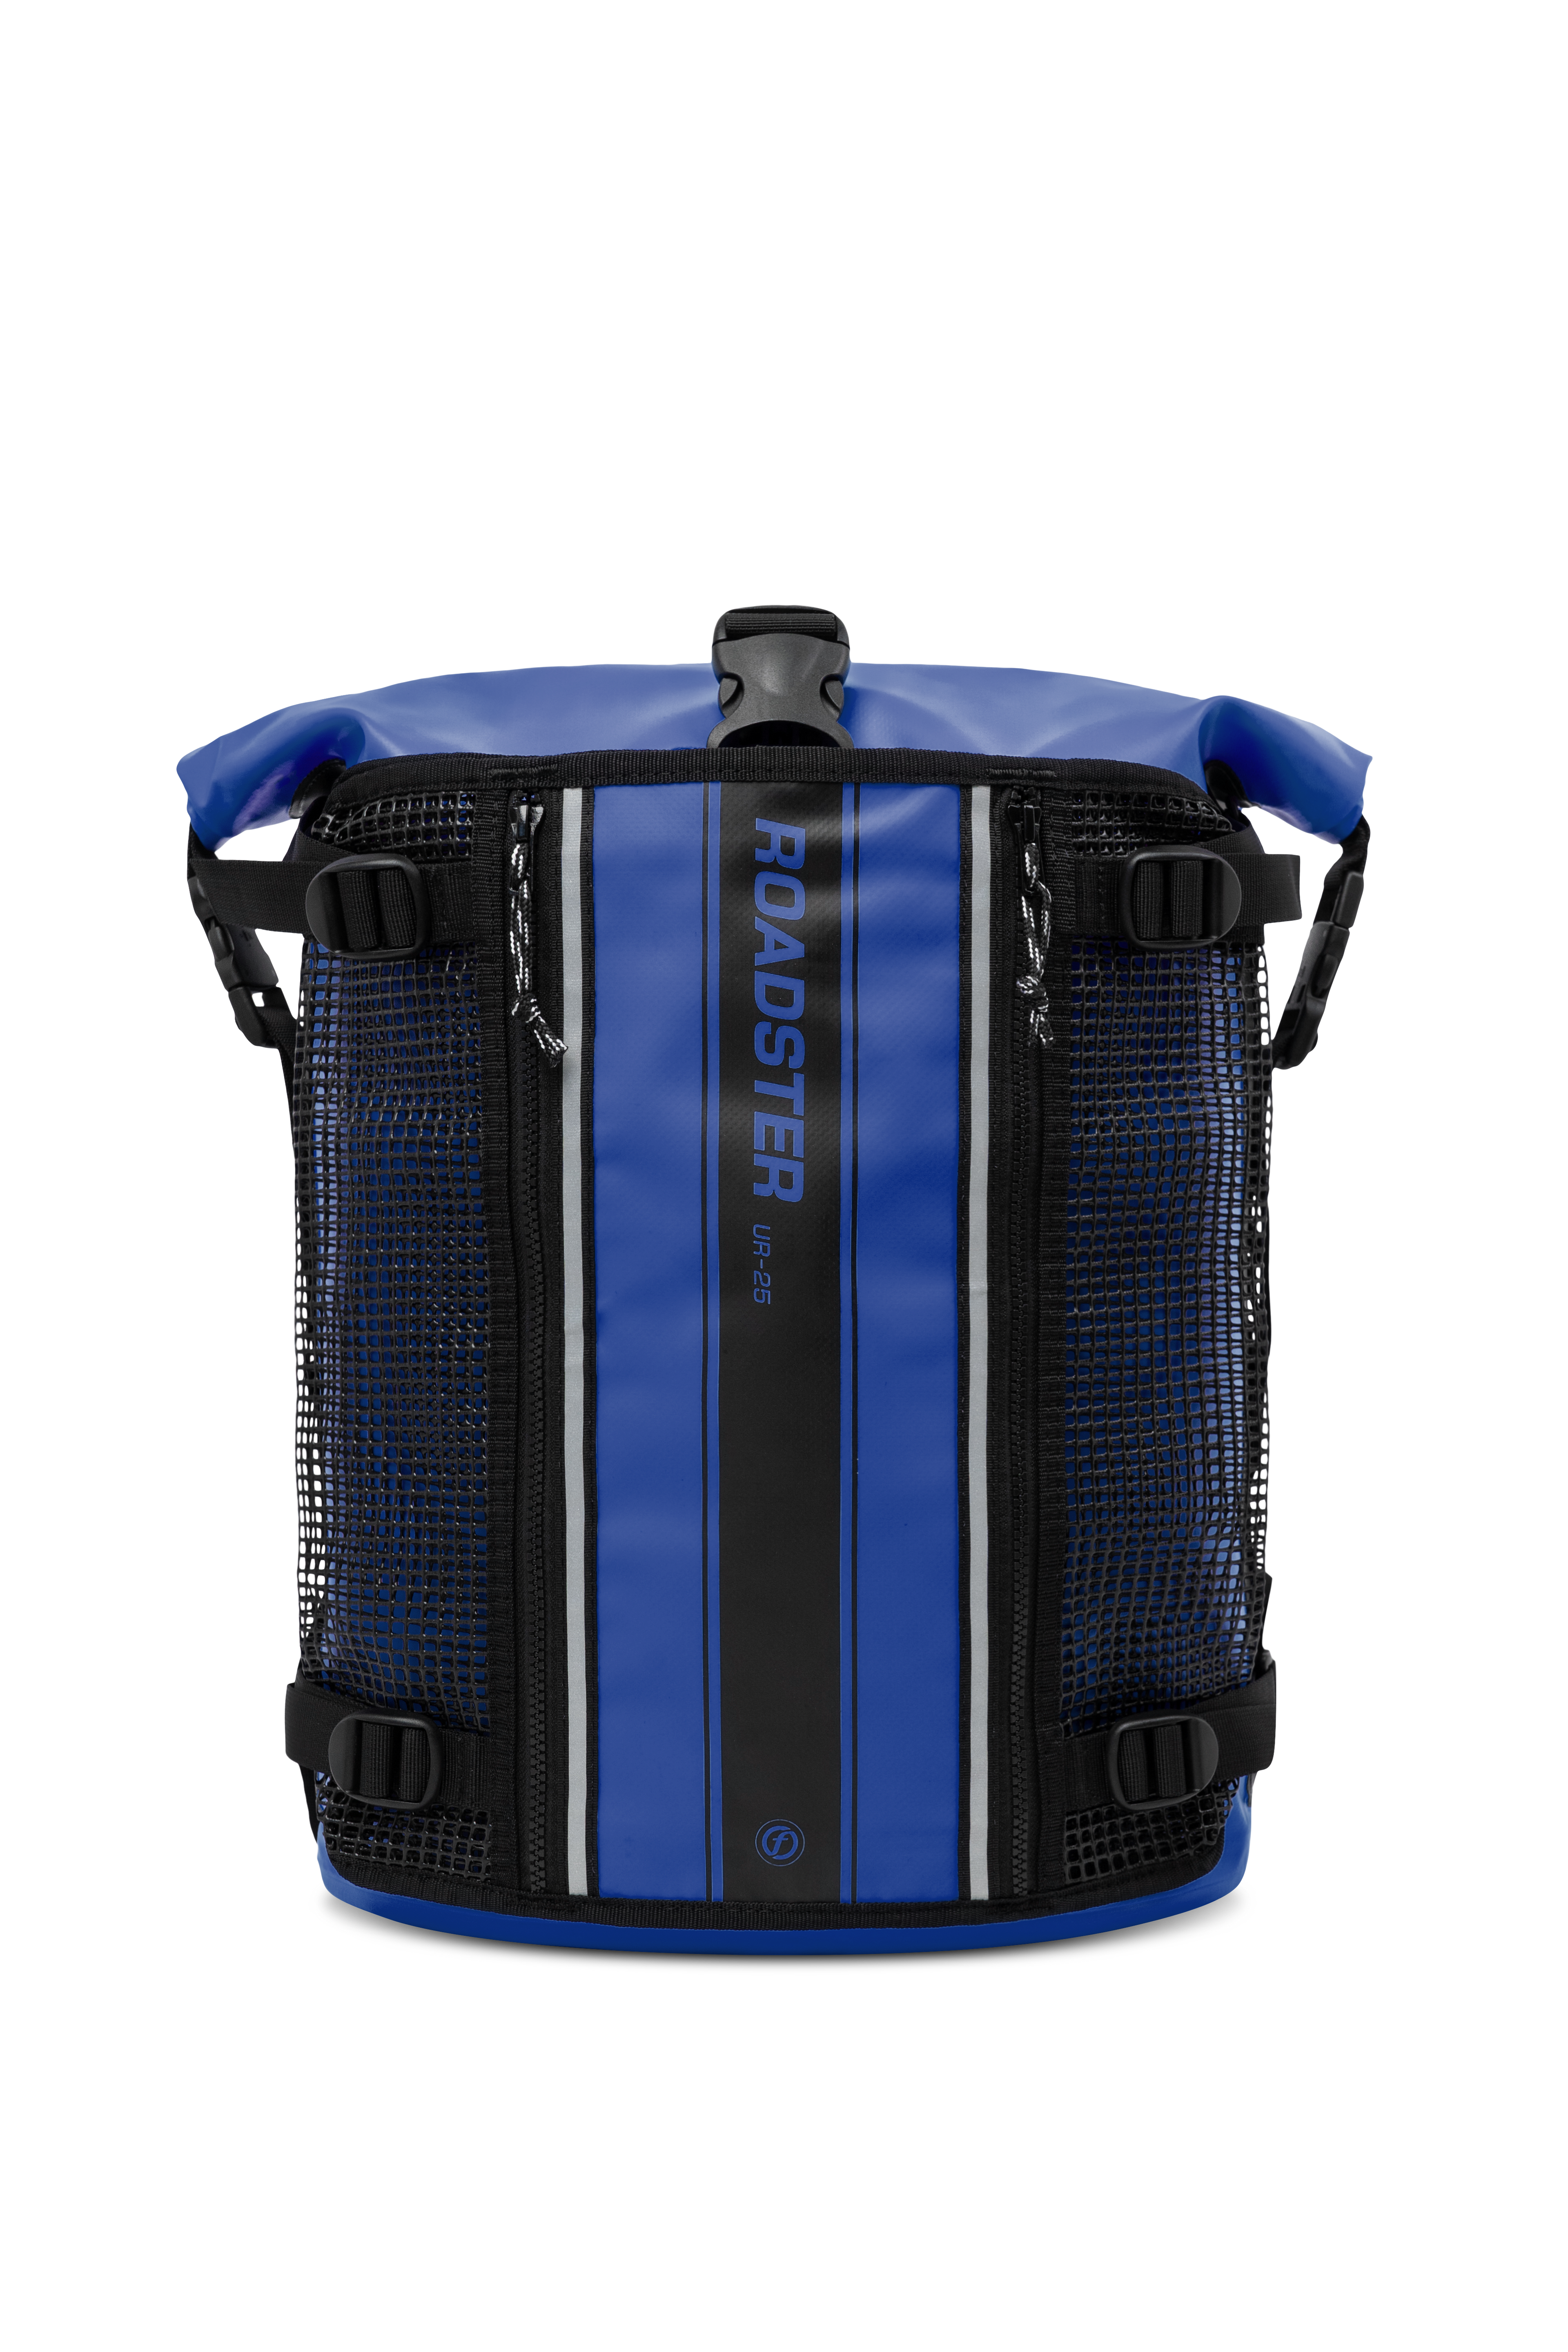 ROADSTER waterproof backpack